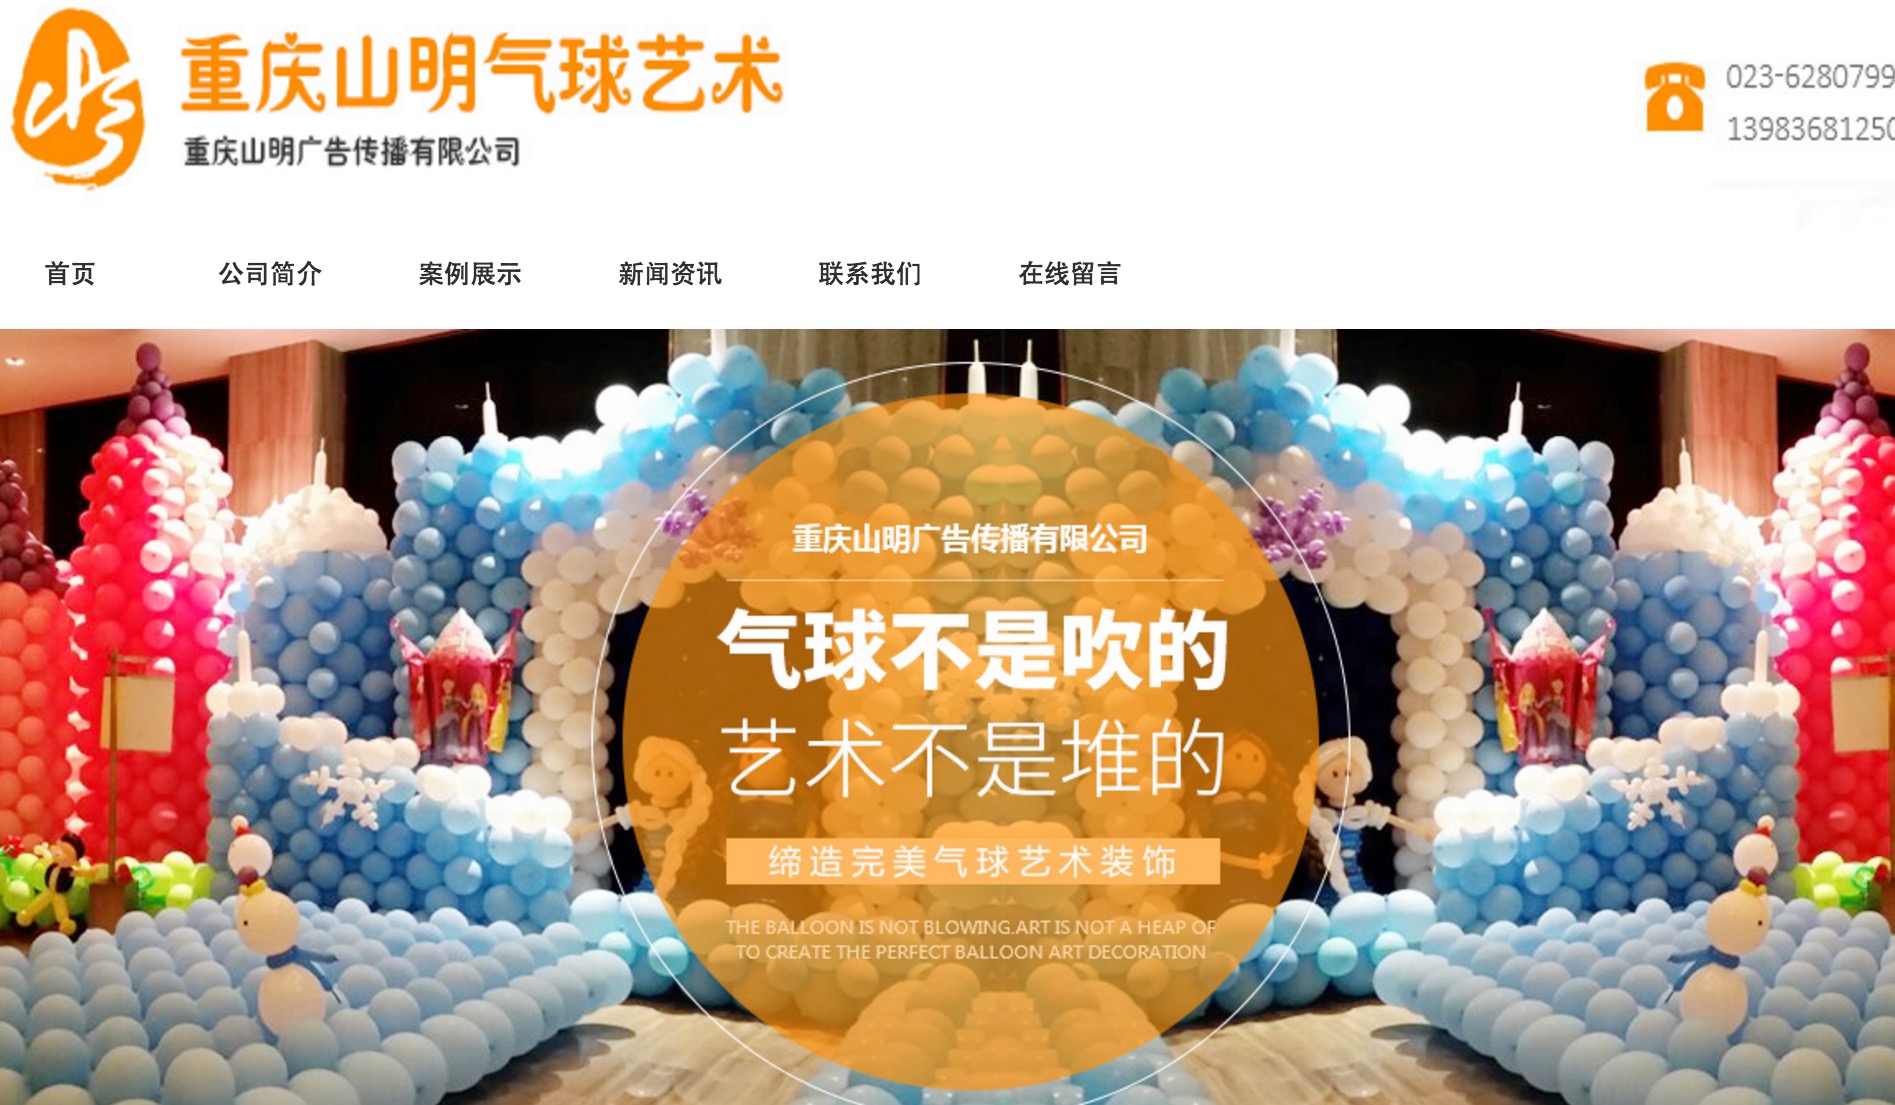 欢迎重庆气球布置加入佛山网络推广公司